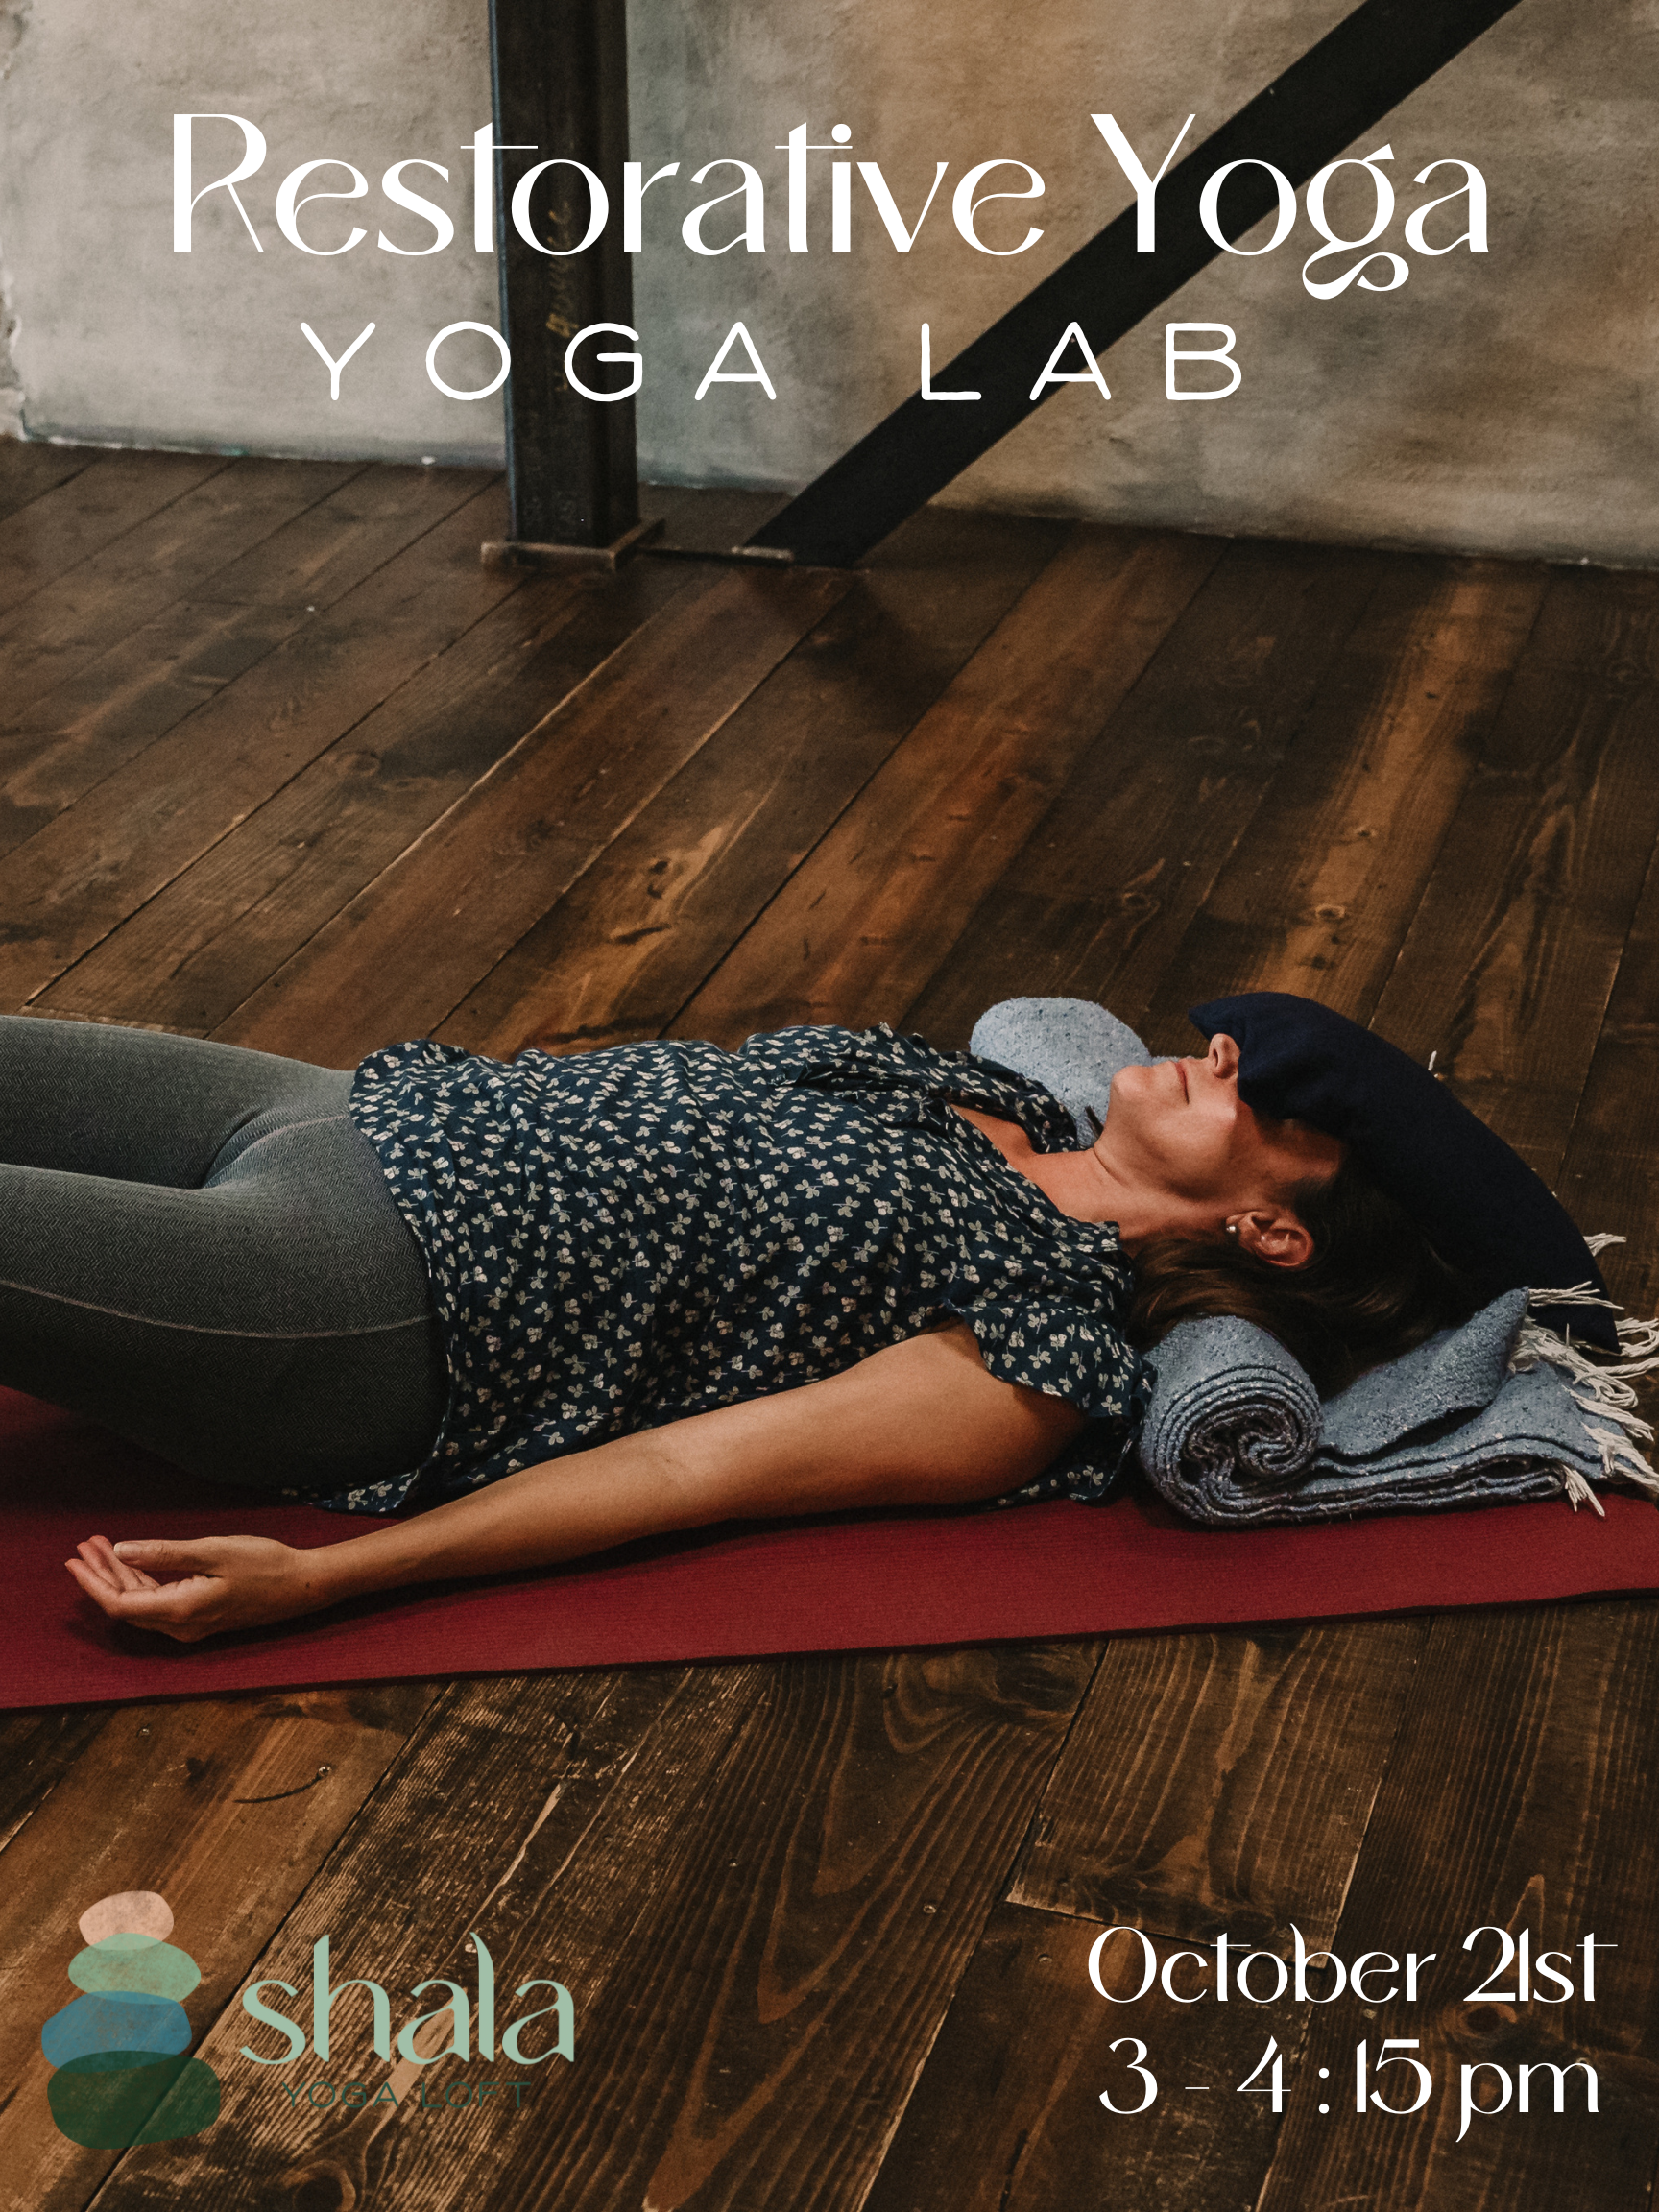 Shala Yoga Loft - Restorative Yoga